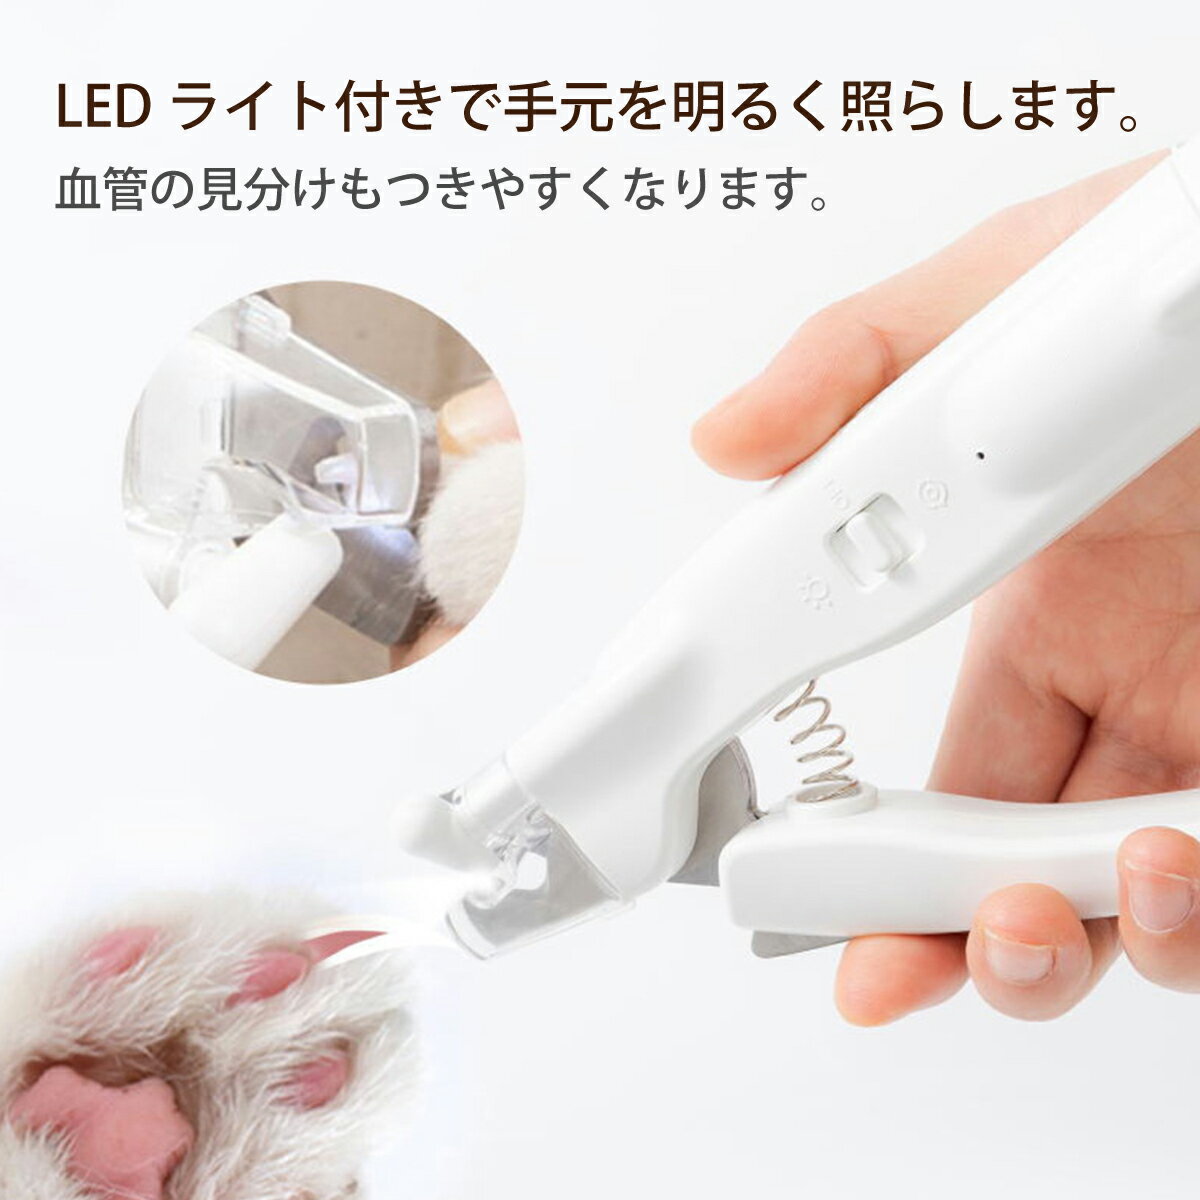 ペット用 爪切り 電動爪トリマー 犬用 電動爪やすり 電動ネイルヤスリ LEDライト付き USB充電式 爪きり いぬ ネコ 犬 猫 小型犬 中型犬 pet-n-clippers